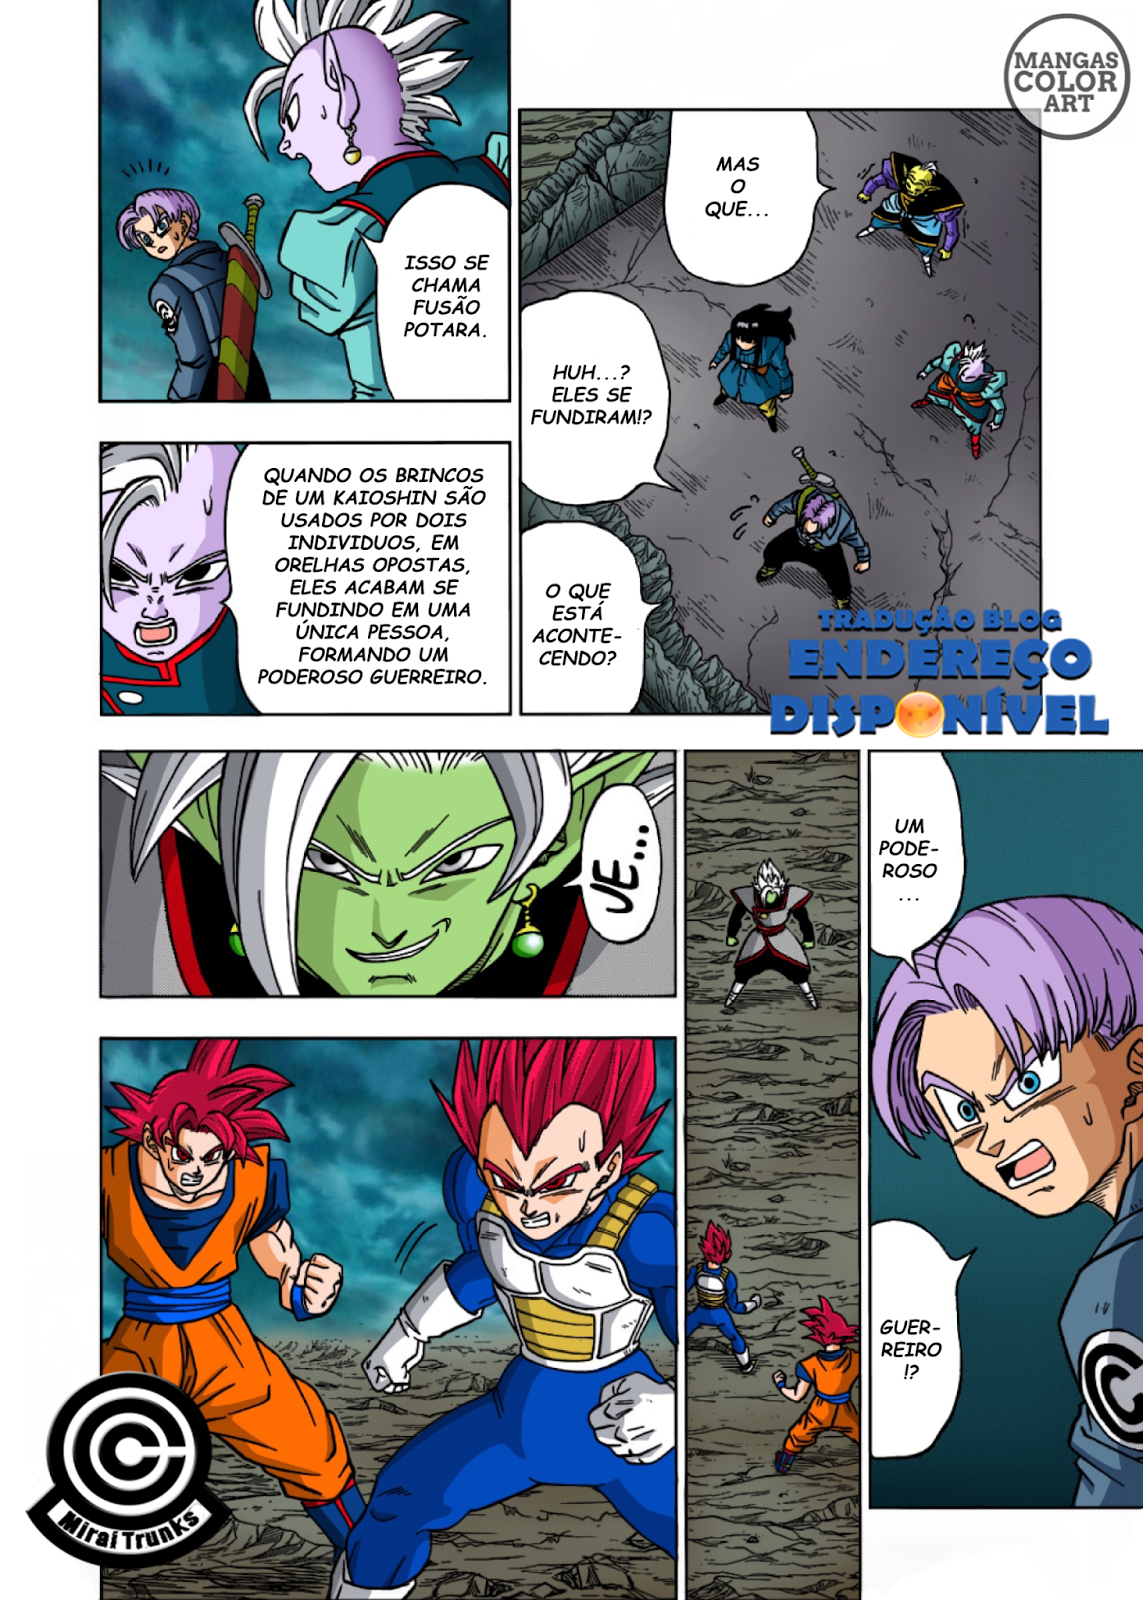 Endereço Disponível: Capítulo 16 do Mangá de Dragon Ball Super Traduzido!